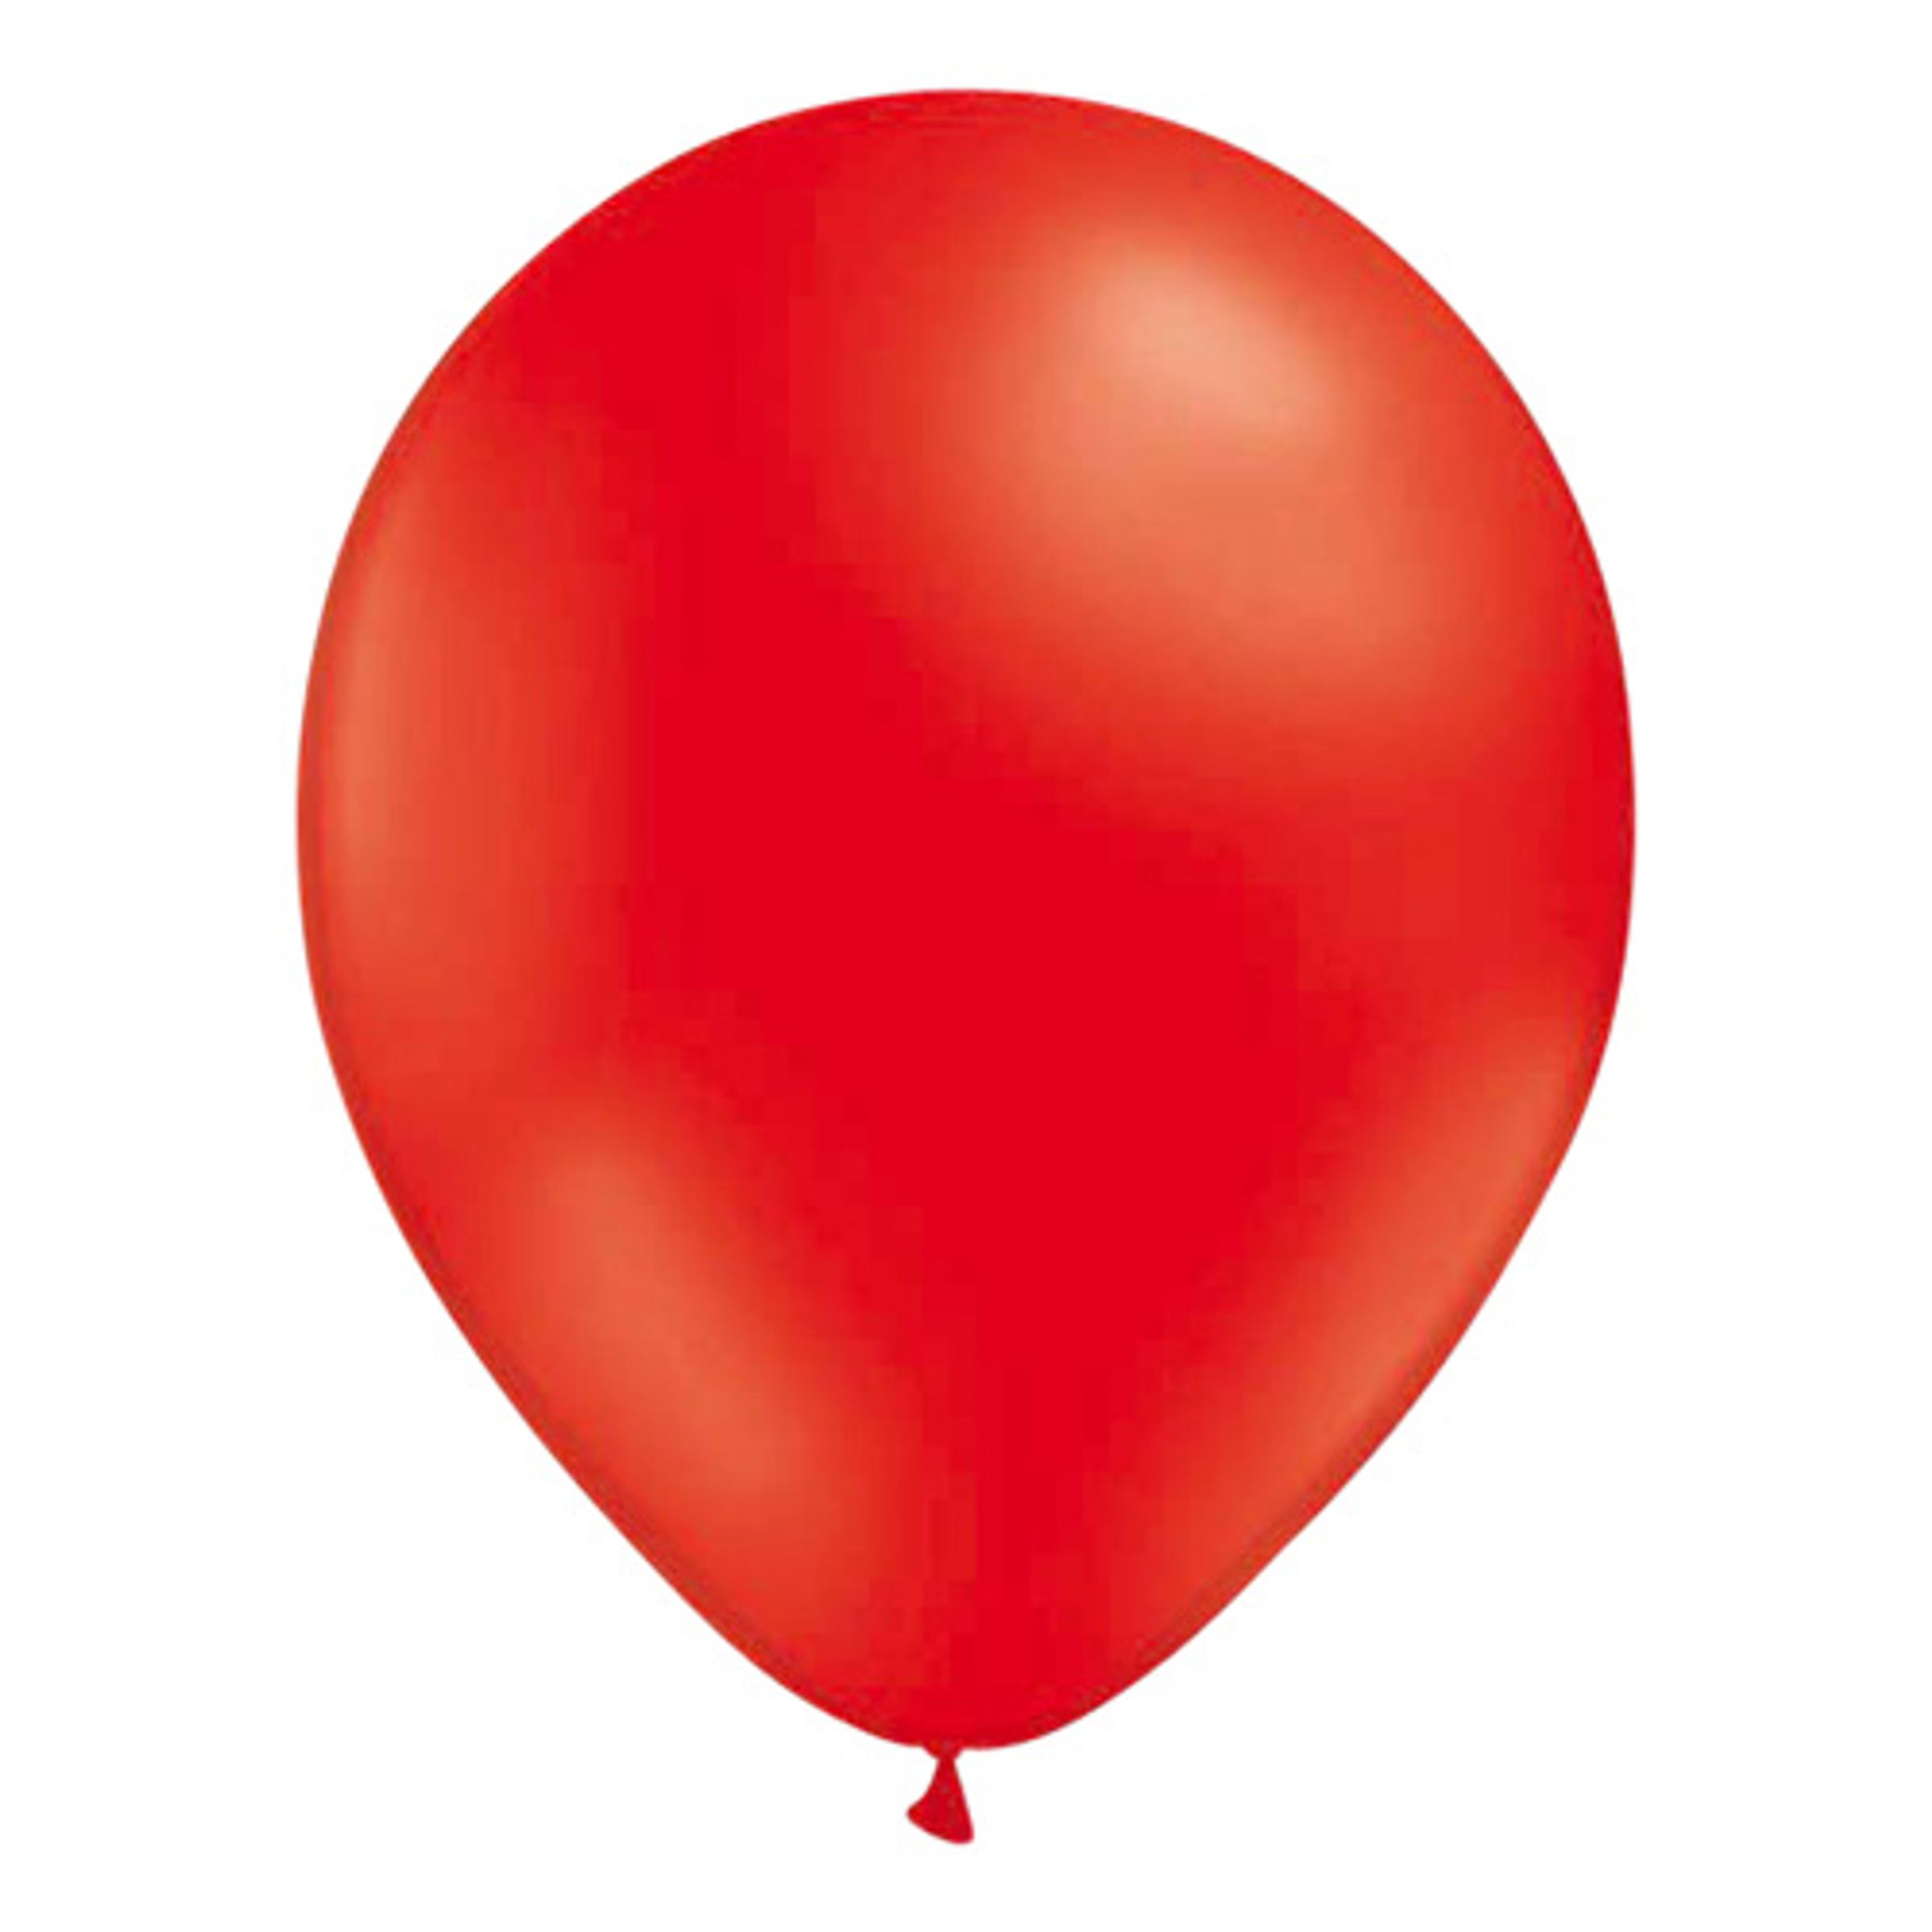 Ballonger Röda - 100-pack